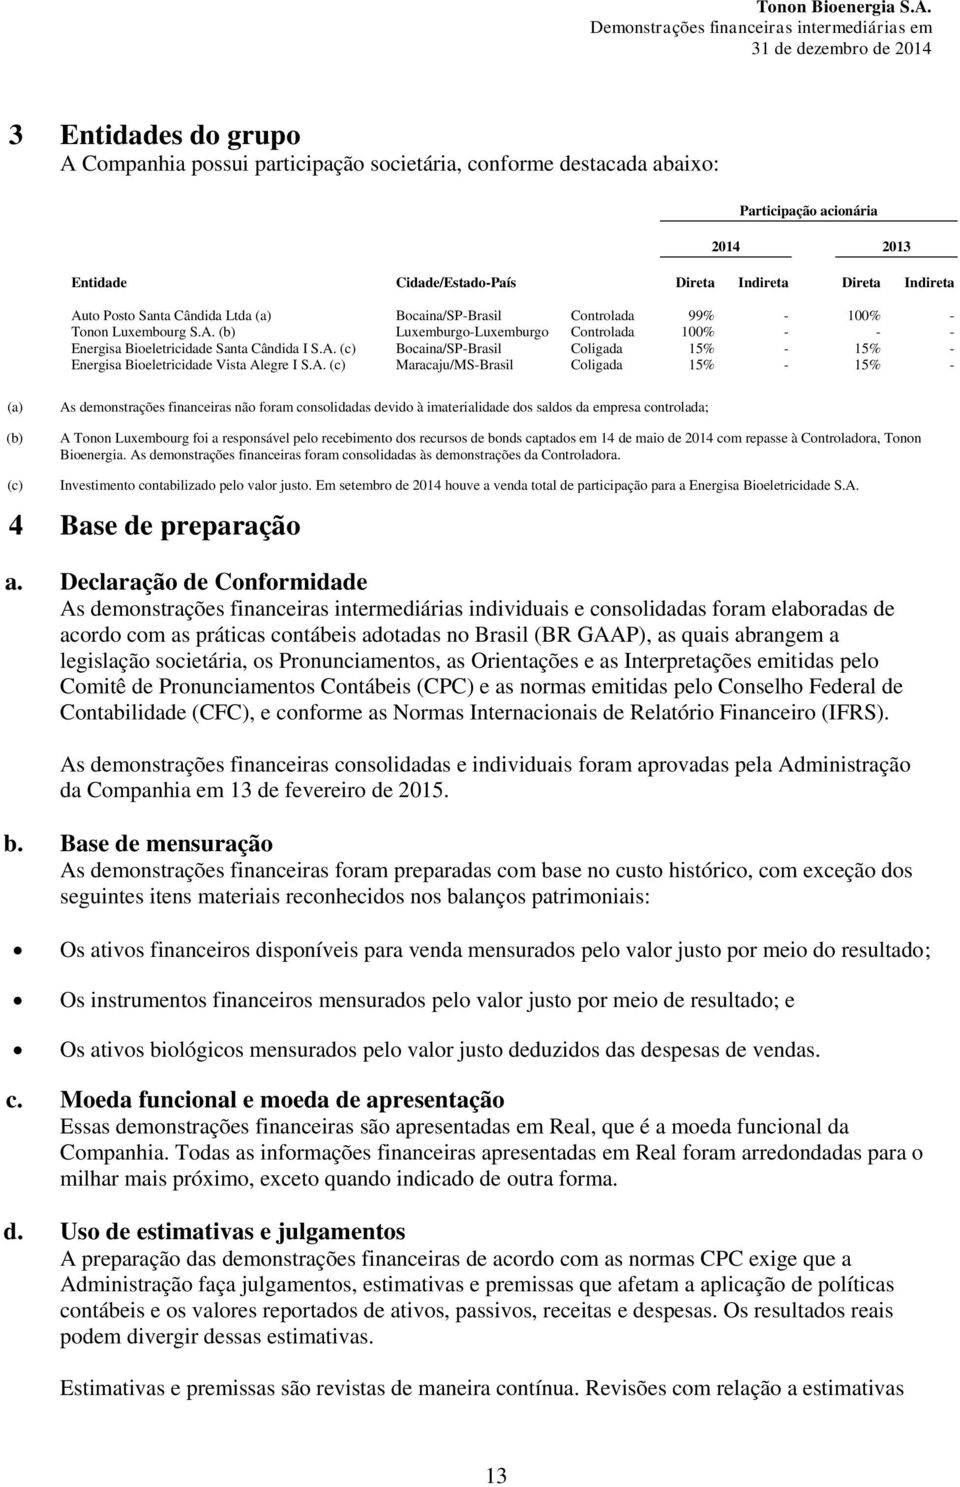 A. (c) Maracaju/MS-Brasil Coligada 15% - 15% - (a) (b) As demonstrações financeiras não foram consolidadas devido à imaterialidade dos saldos da empresa controlada; A Tonon Luxembourg foi a